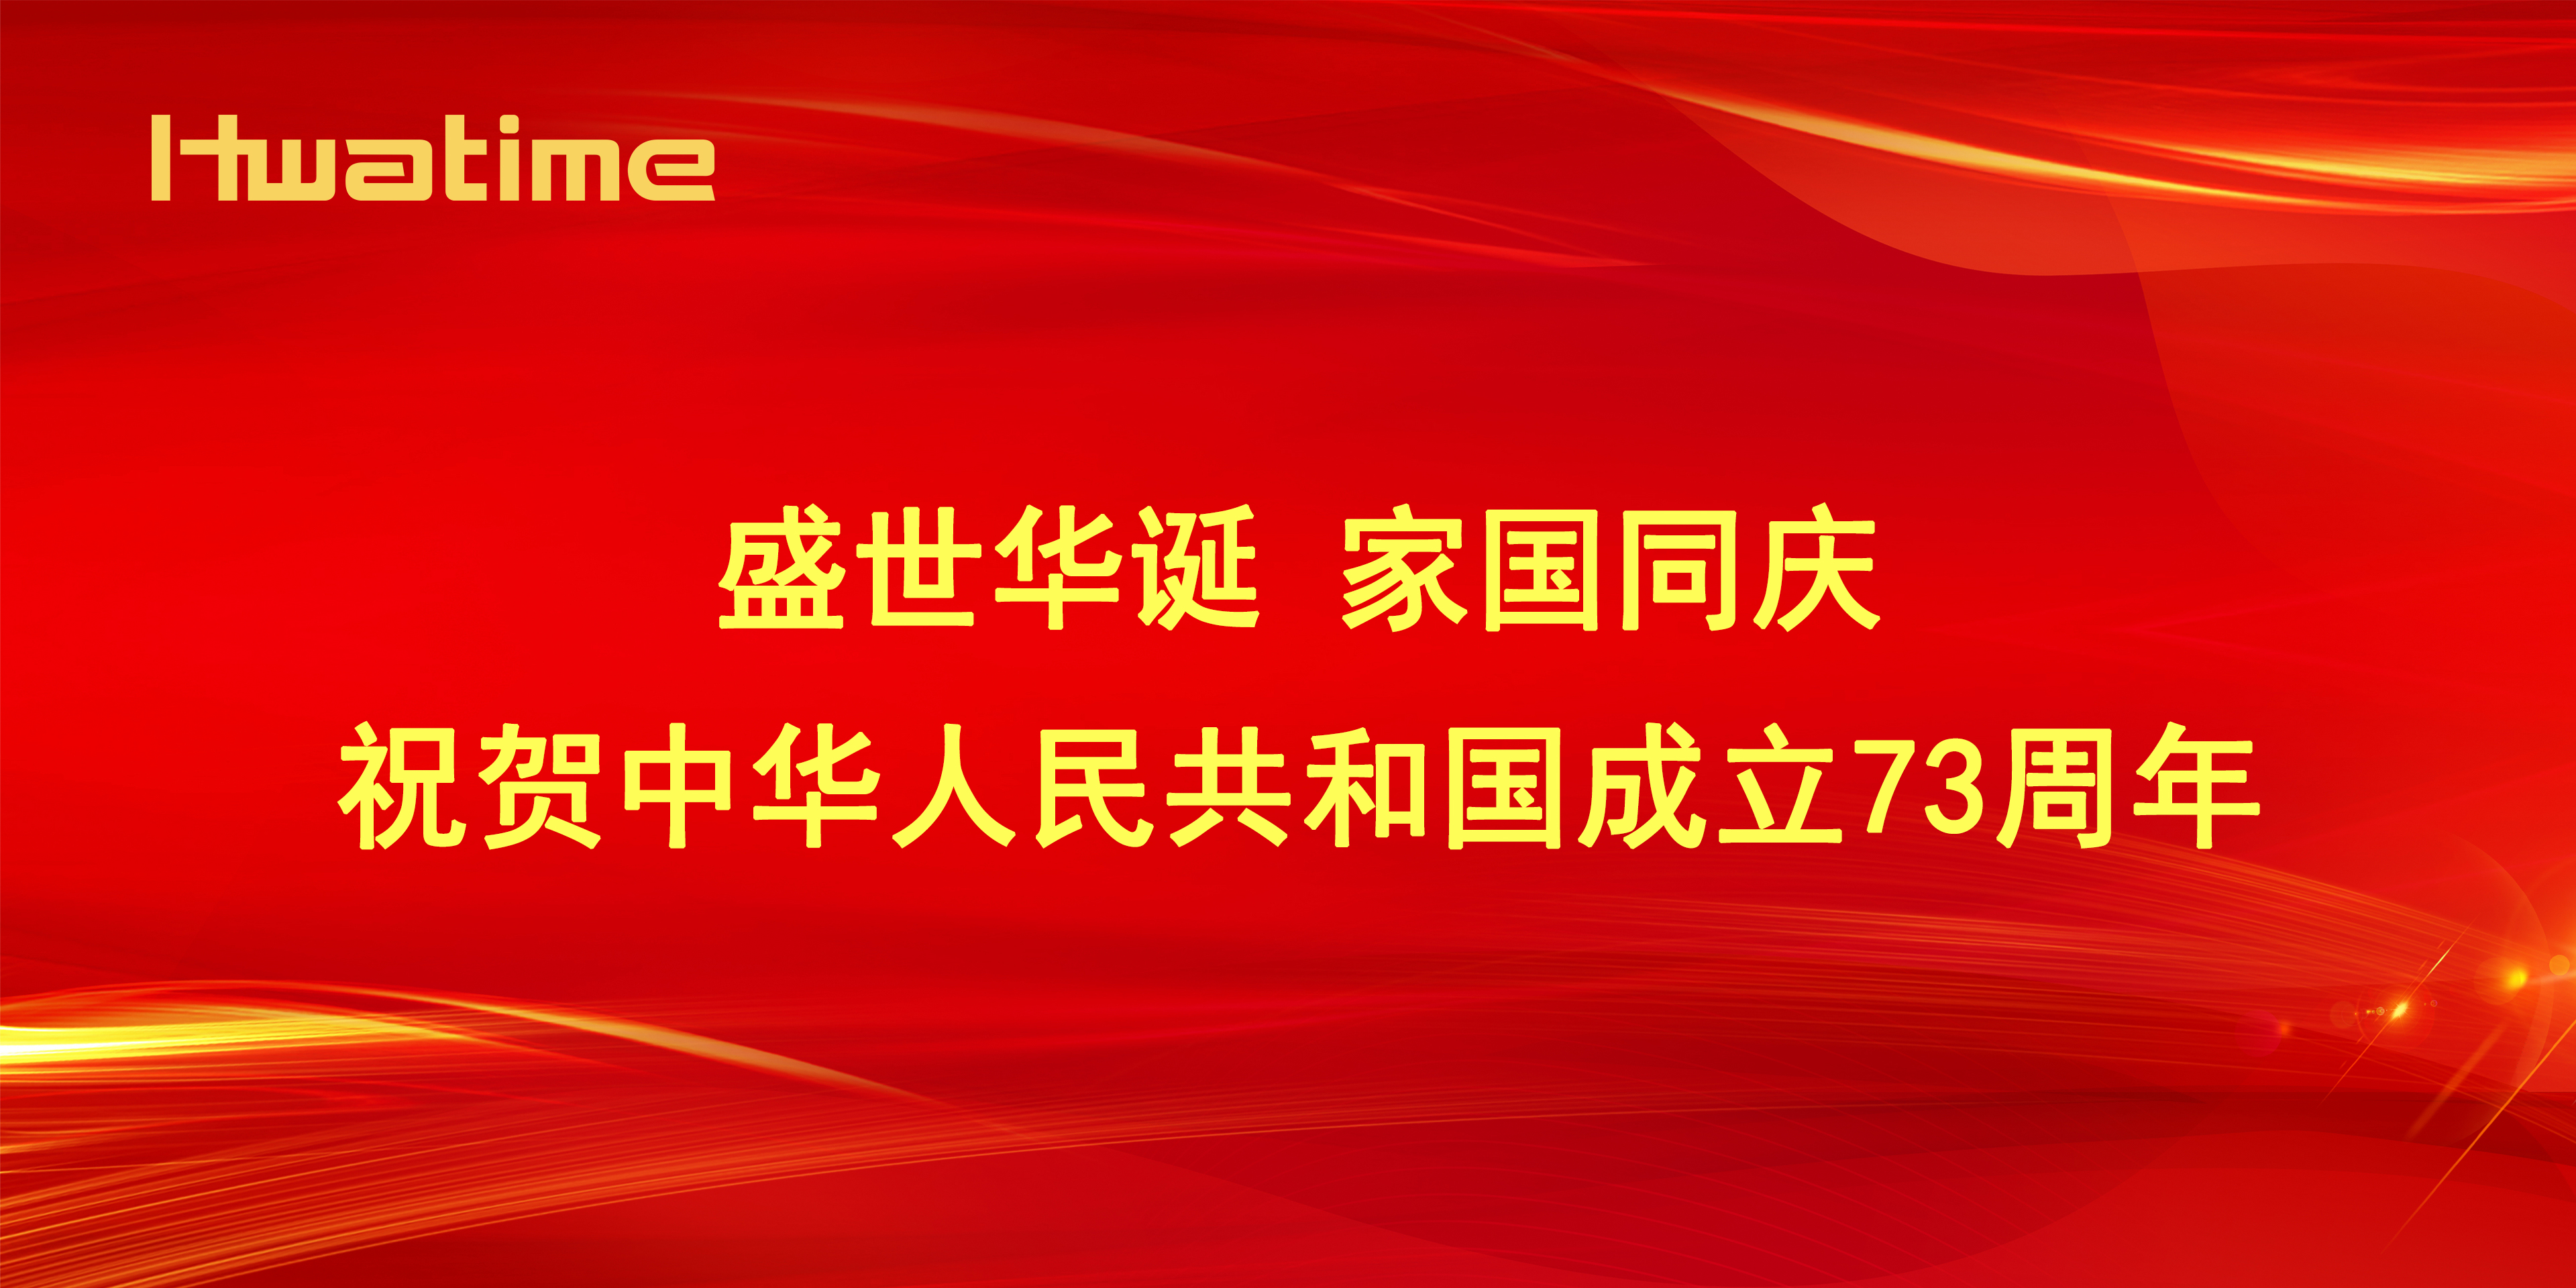 华腾医疗 ▏热烈祝贺中华人民共和国成立73周年